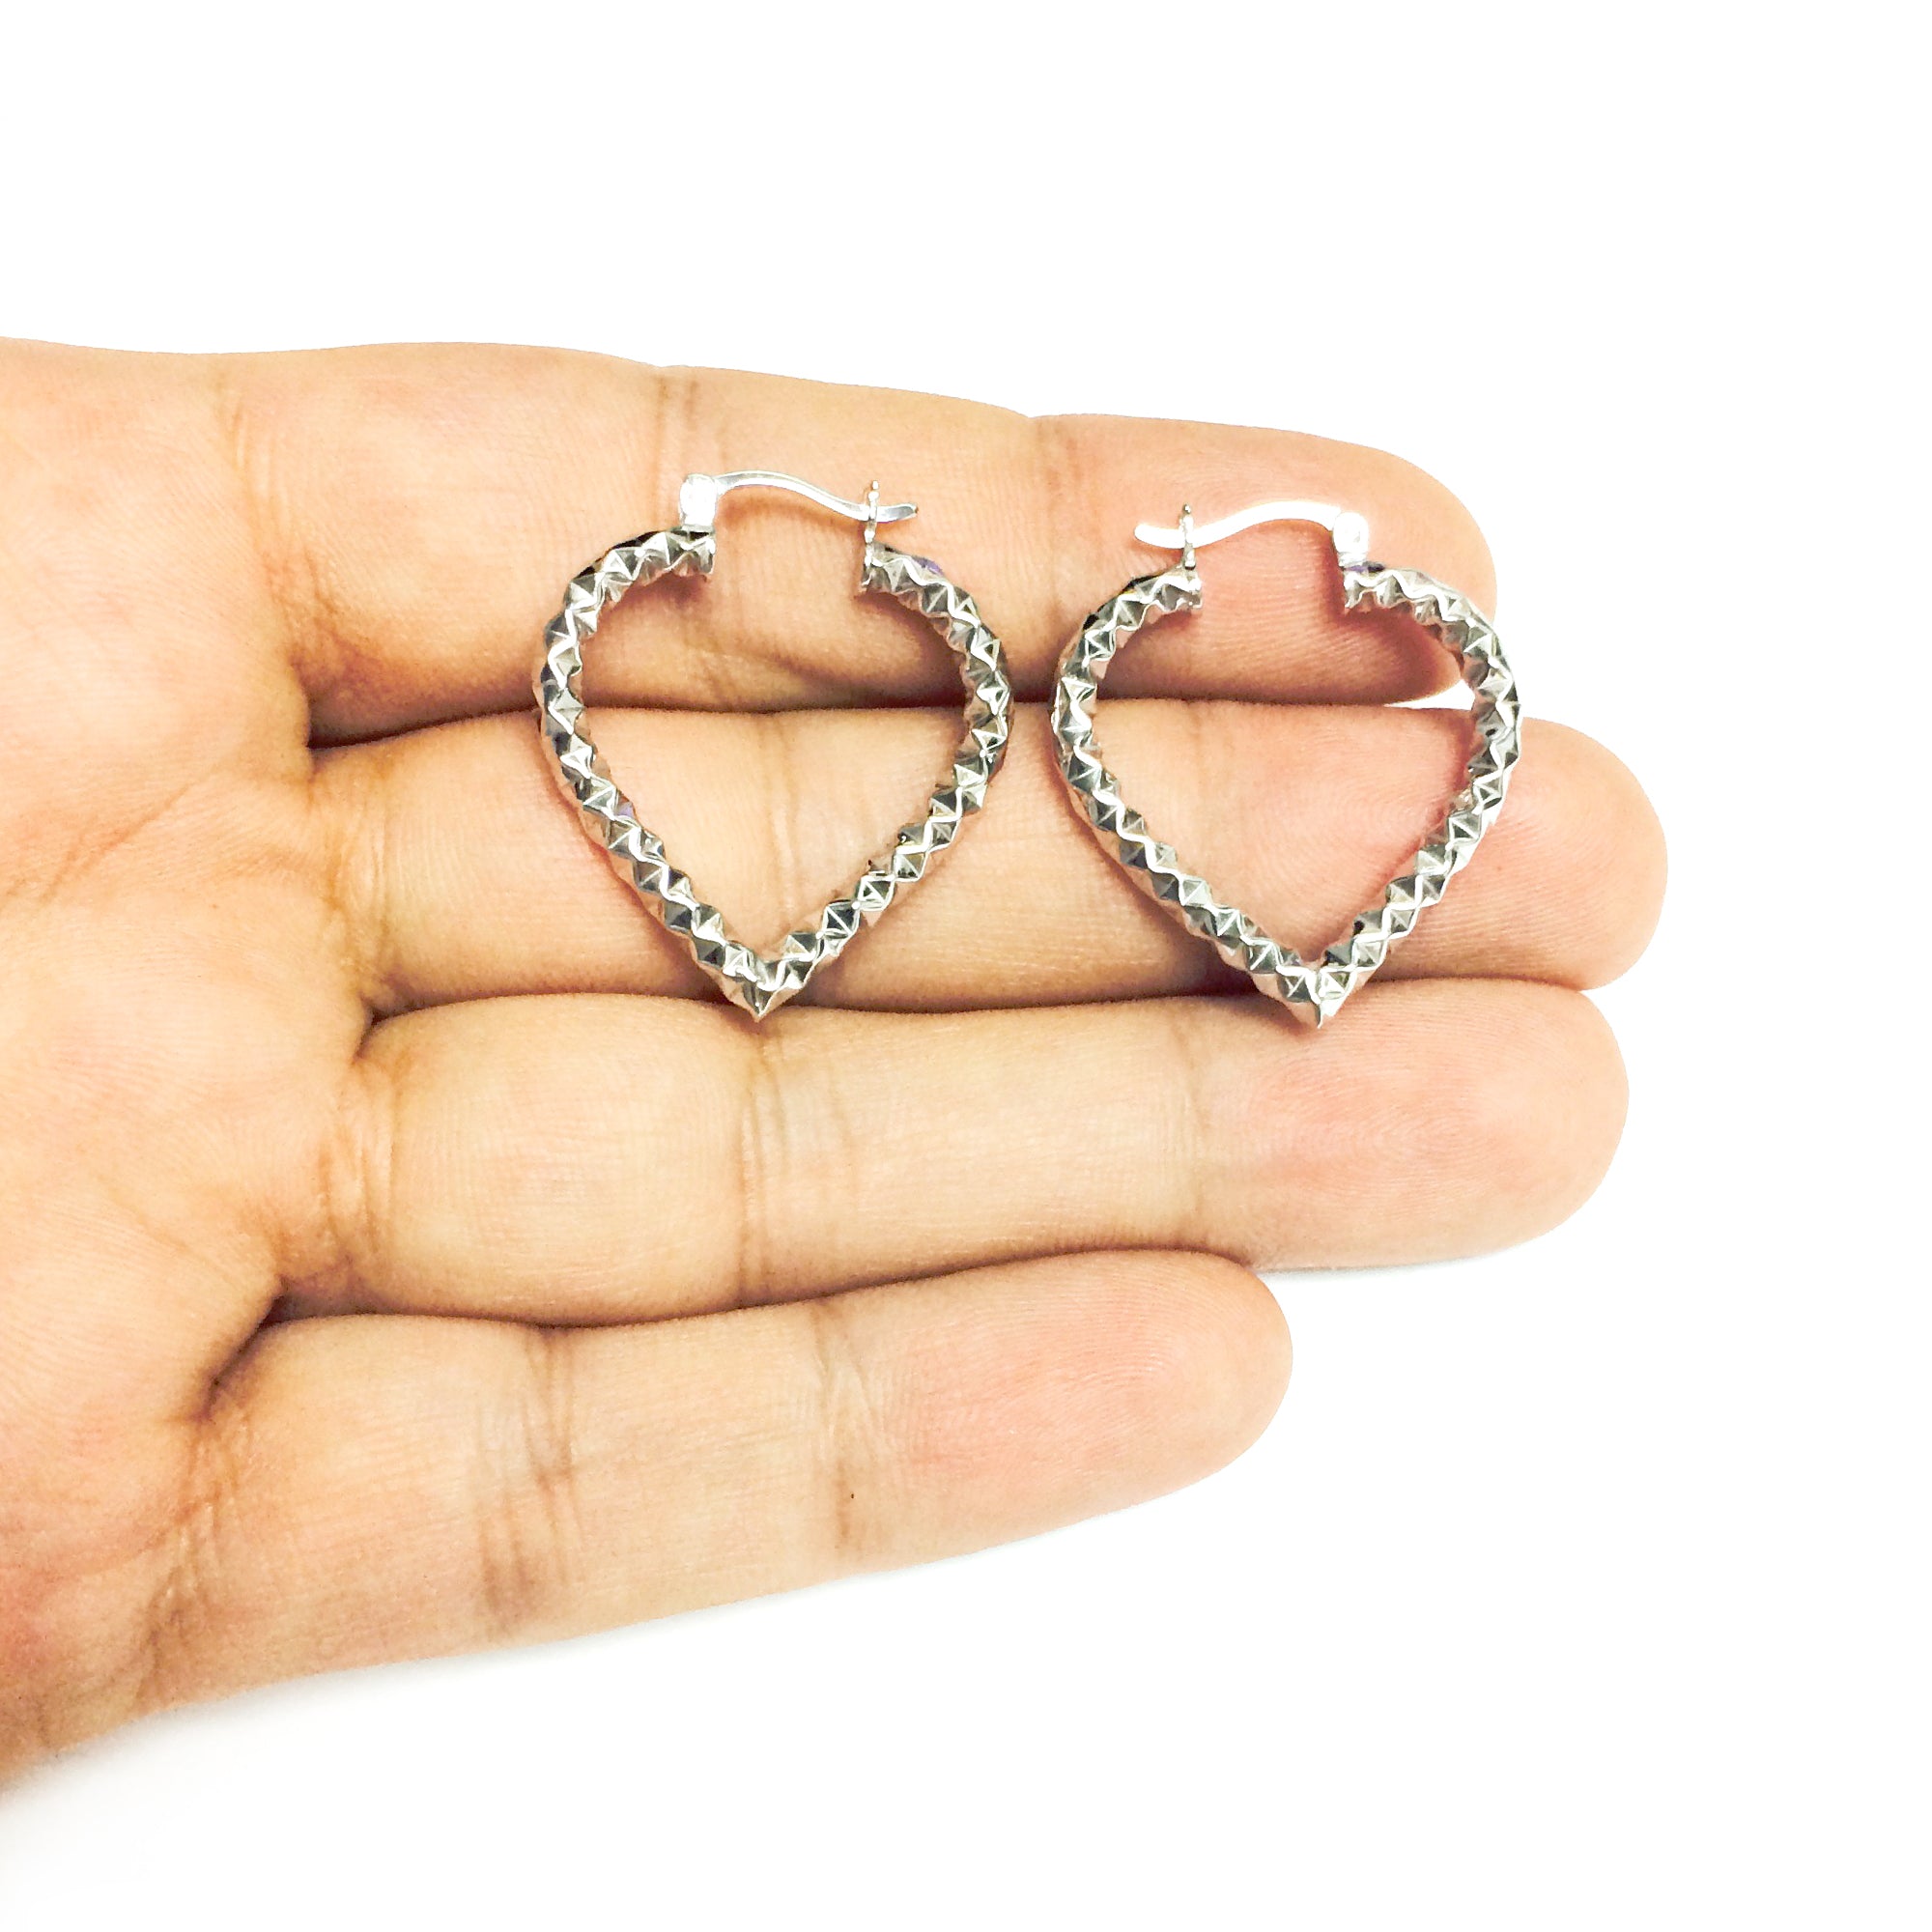 Sterling sølv rhodineret hjerteformede bøjleøreringe, diameter 25 mm fine designersmykker til mænd og kvinder